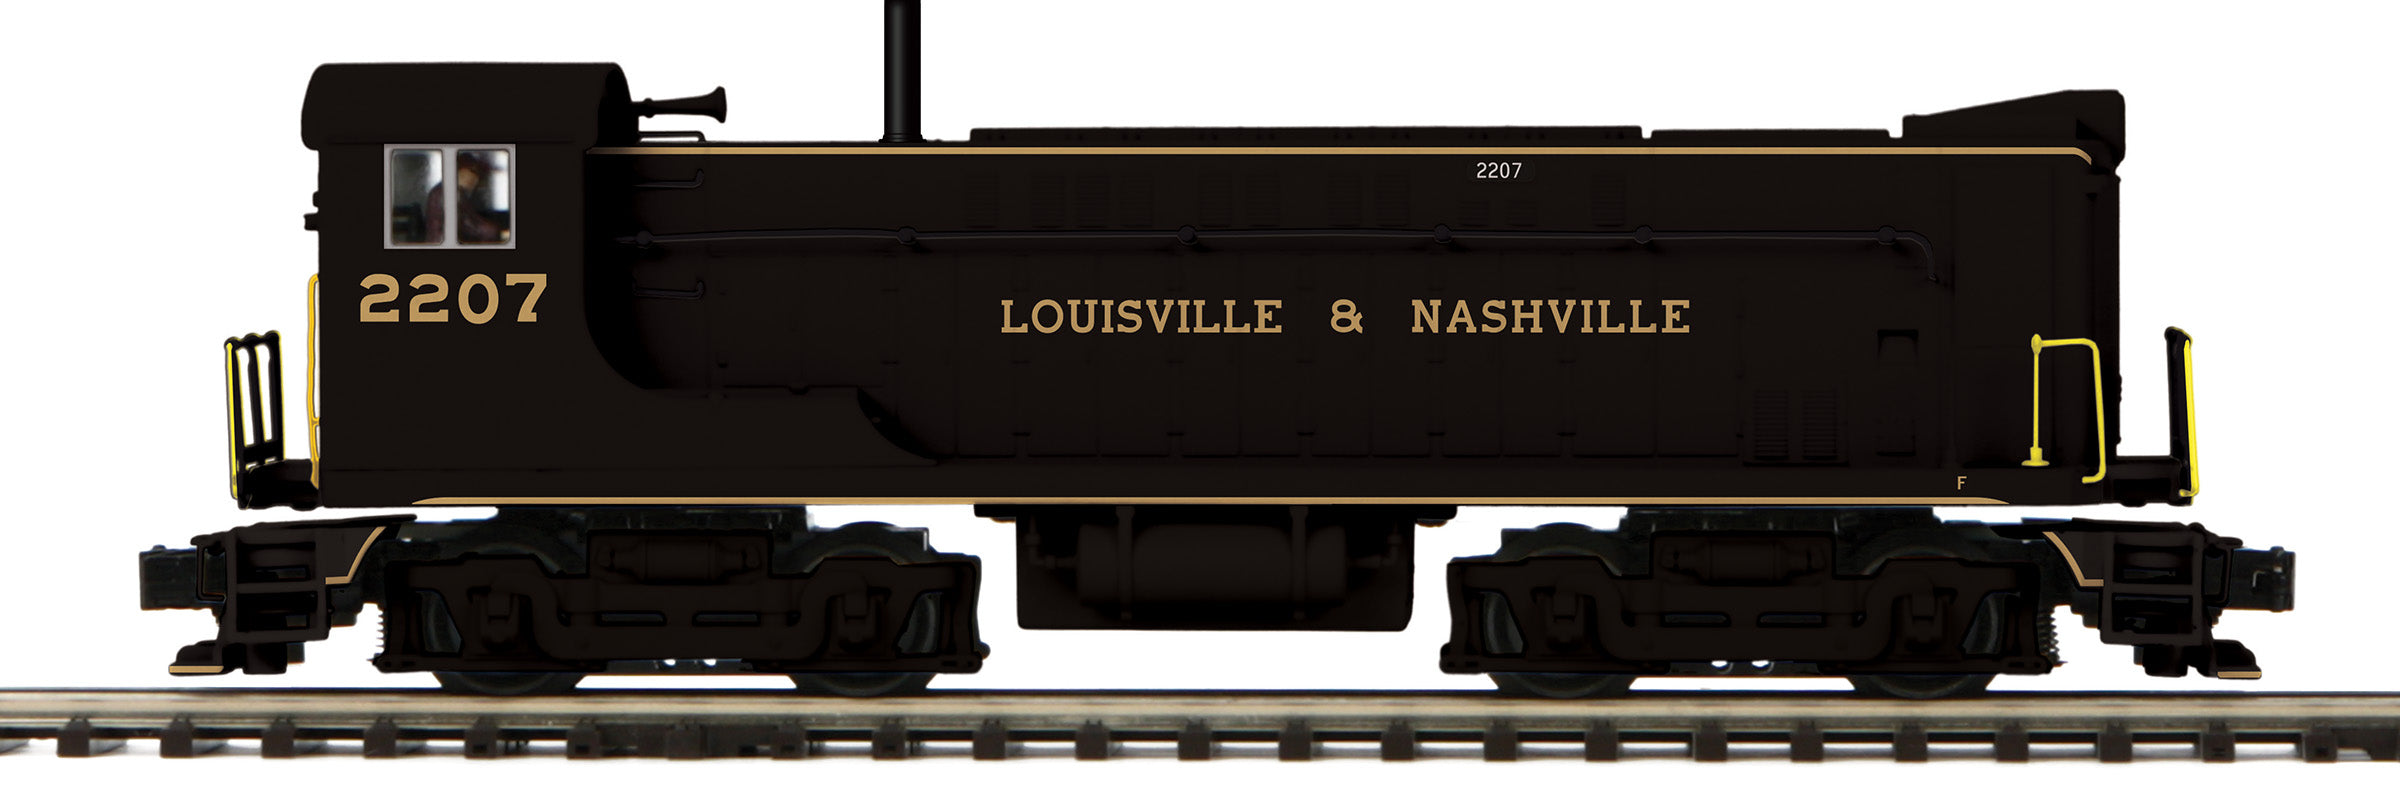 MTH 20-21656-1 - VO 1000 Diesel Engine "Louisville & Nashville" w/ PS3 #2207 - Custom Run for MrMuffin'sTrains